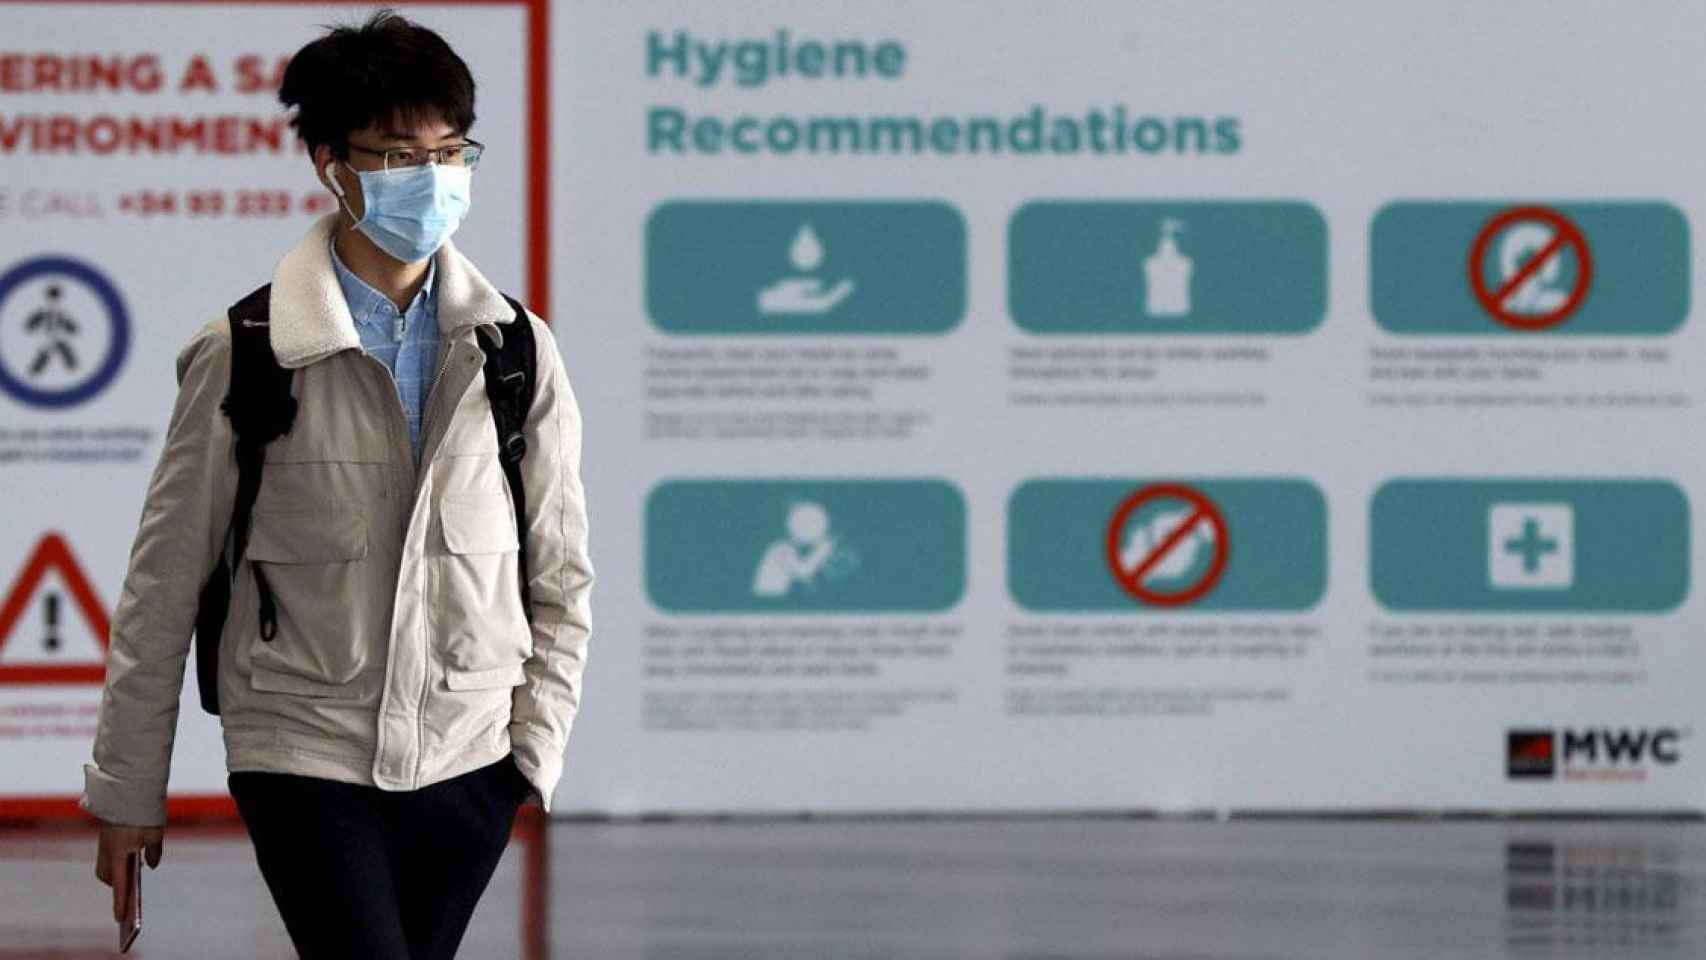 Una persona pasea ante las recomendaciones de higiene del Mobile por el coronavirus / EFE